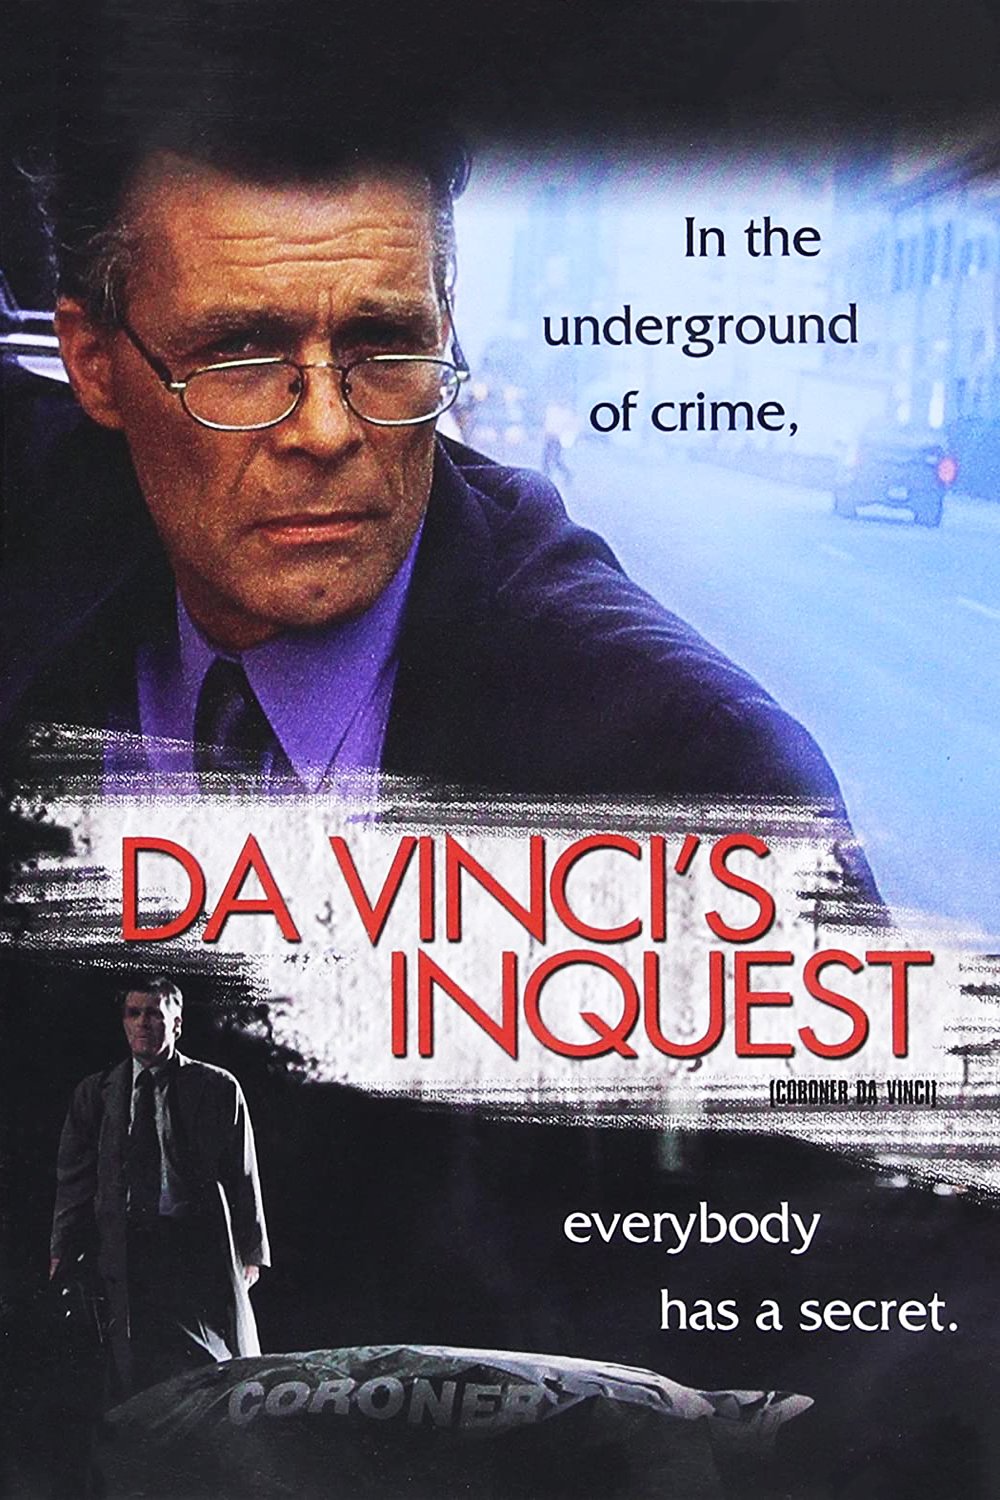 Poster of the movie Da Vinci's Inquest